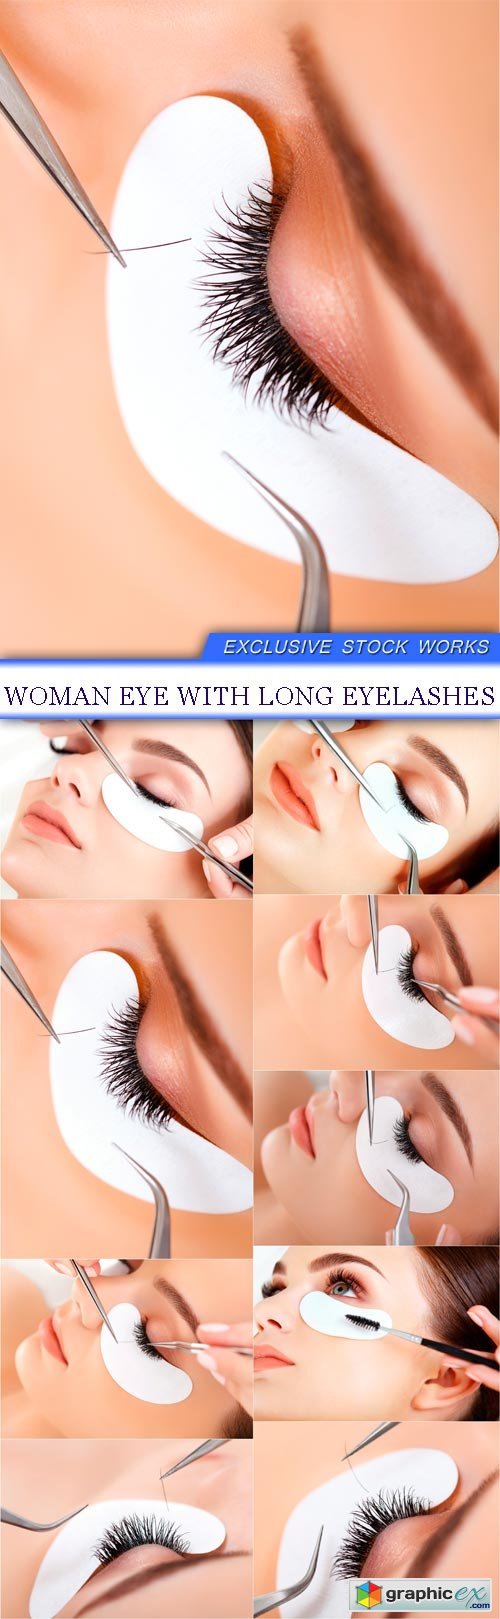 Woman Eye with Long Eyelashes 9x JPEG